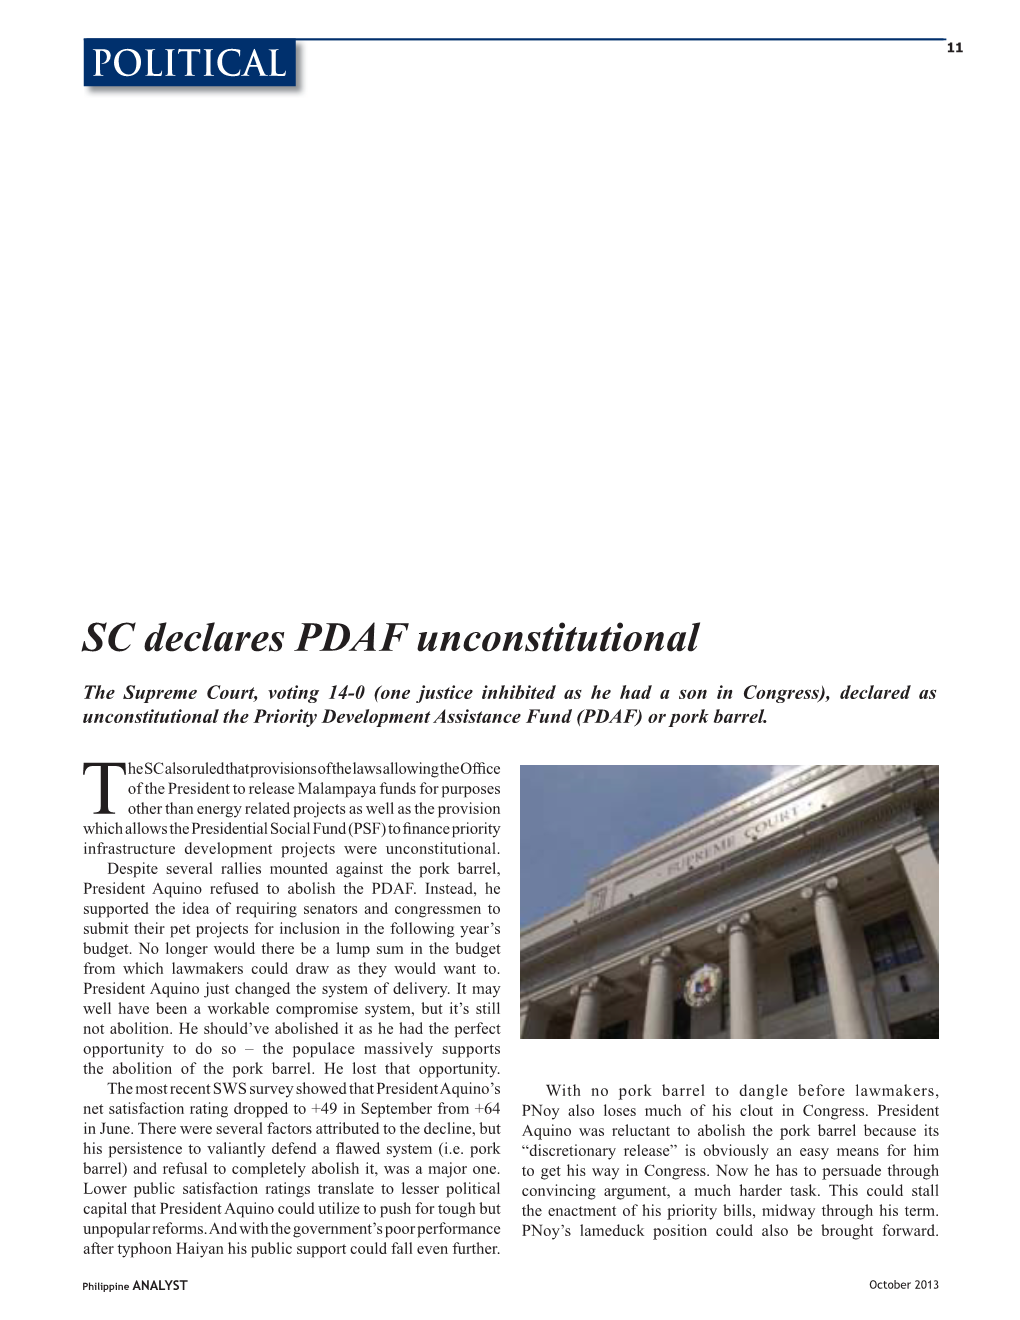 SC Declares PDAF Unconstitutional